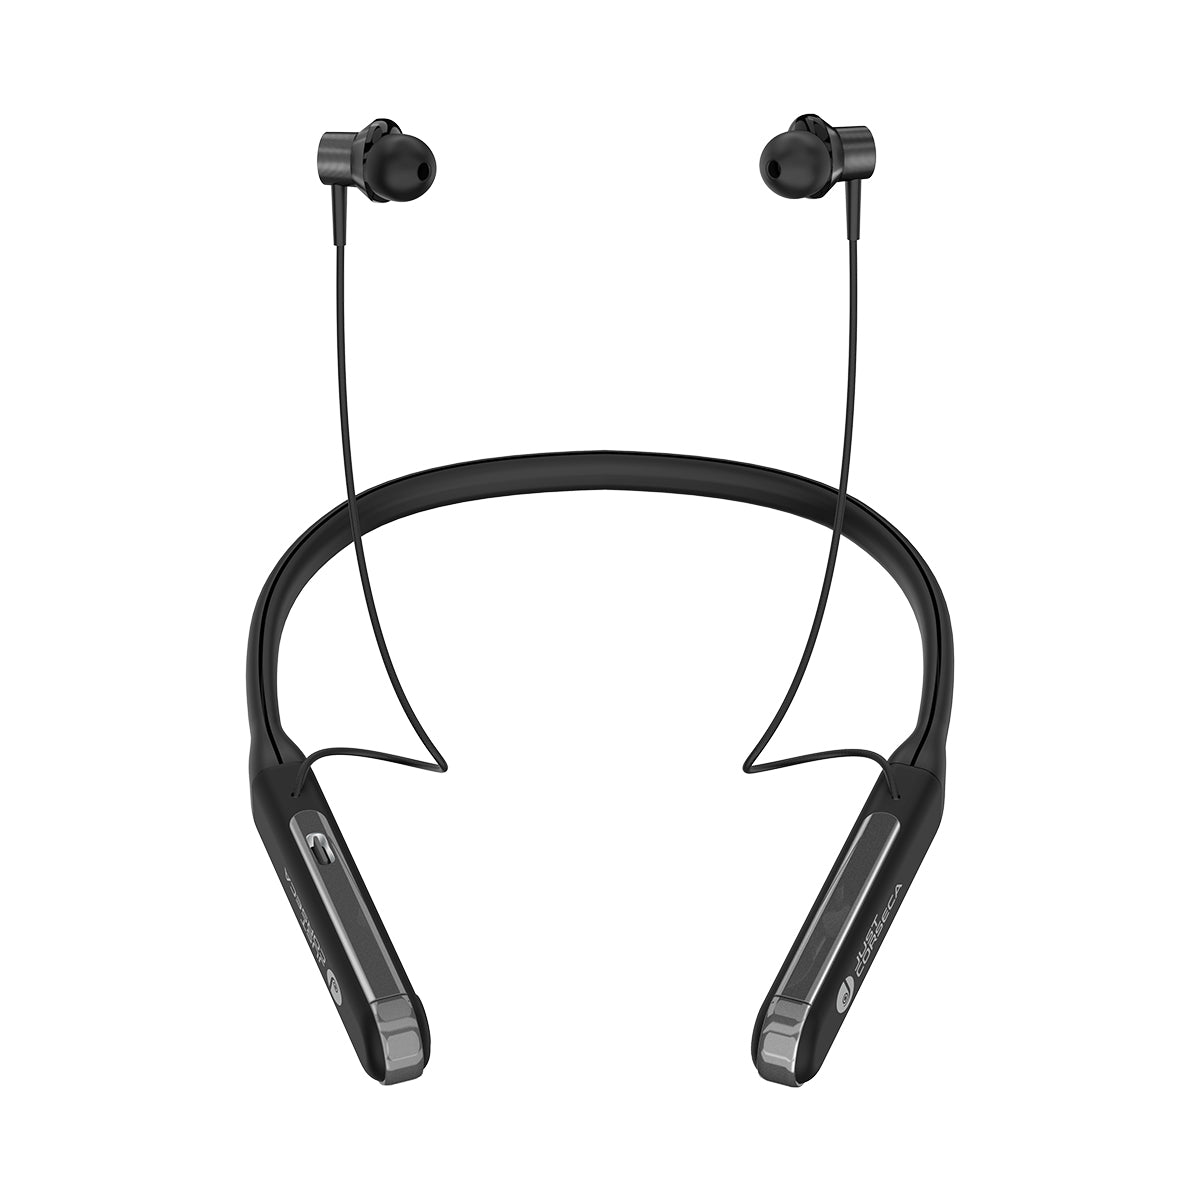 Buy Wireless Bluetooth Neckband Earphones Online at Best Price in